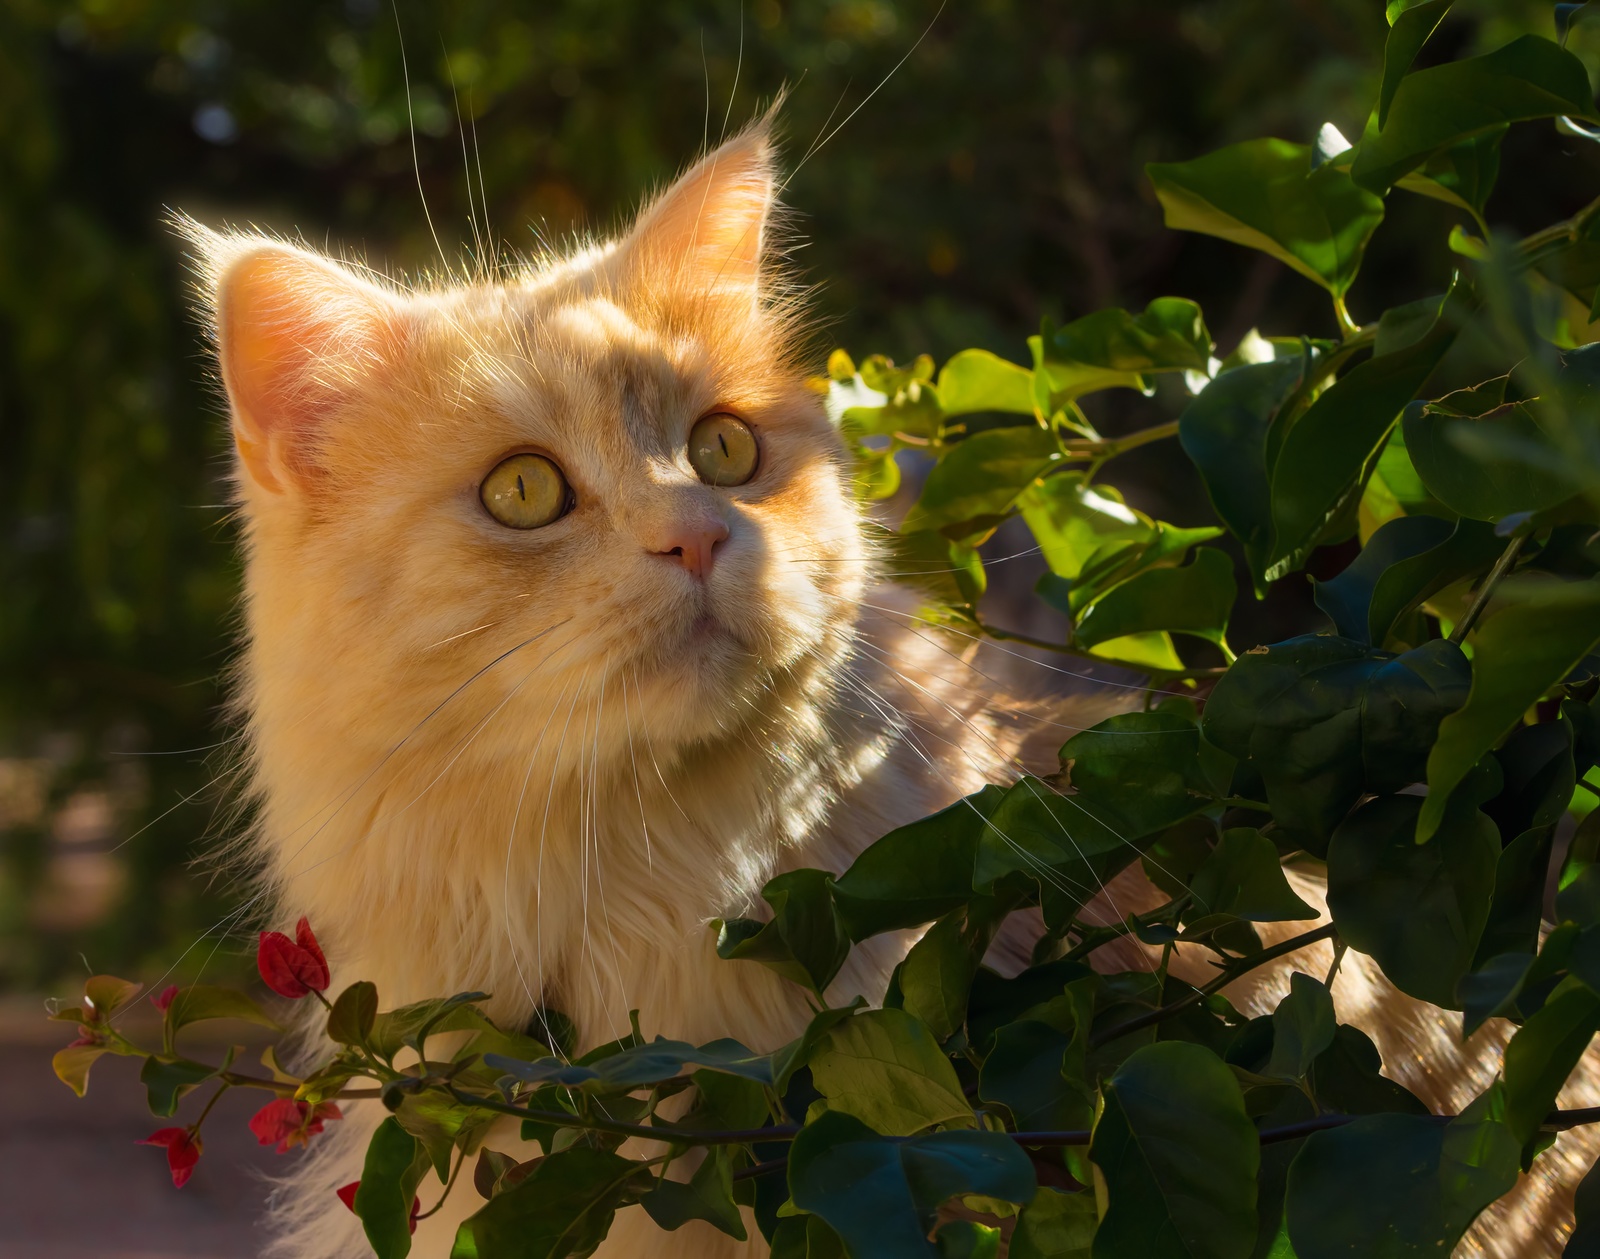 Ginger - cat, Sight, Portrait, Muzzle, Leaves